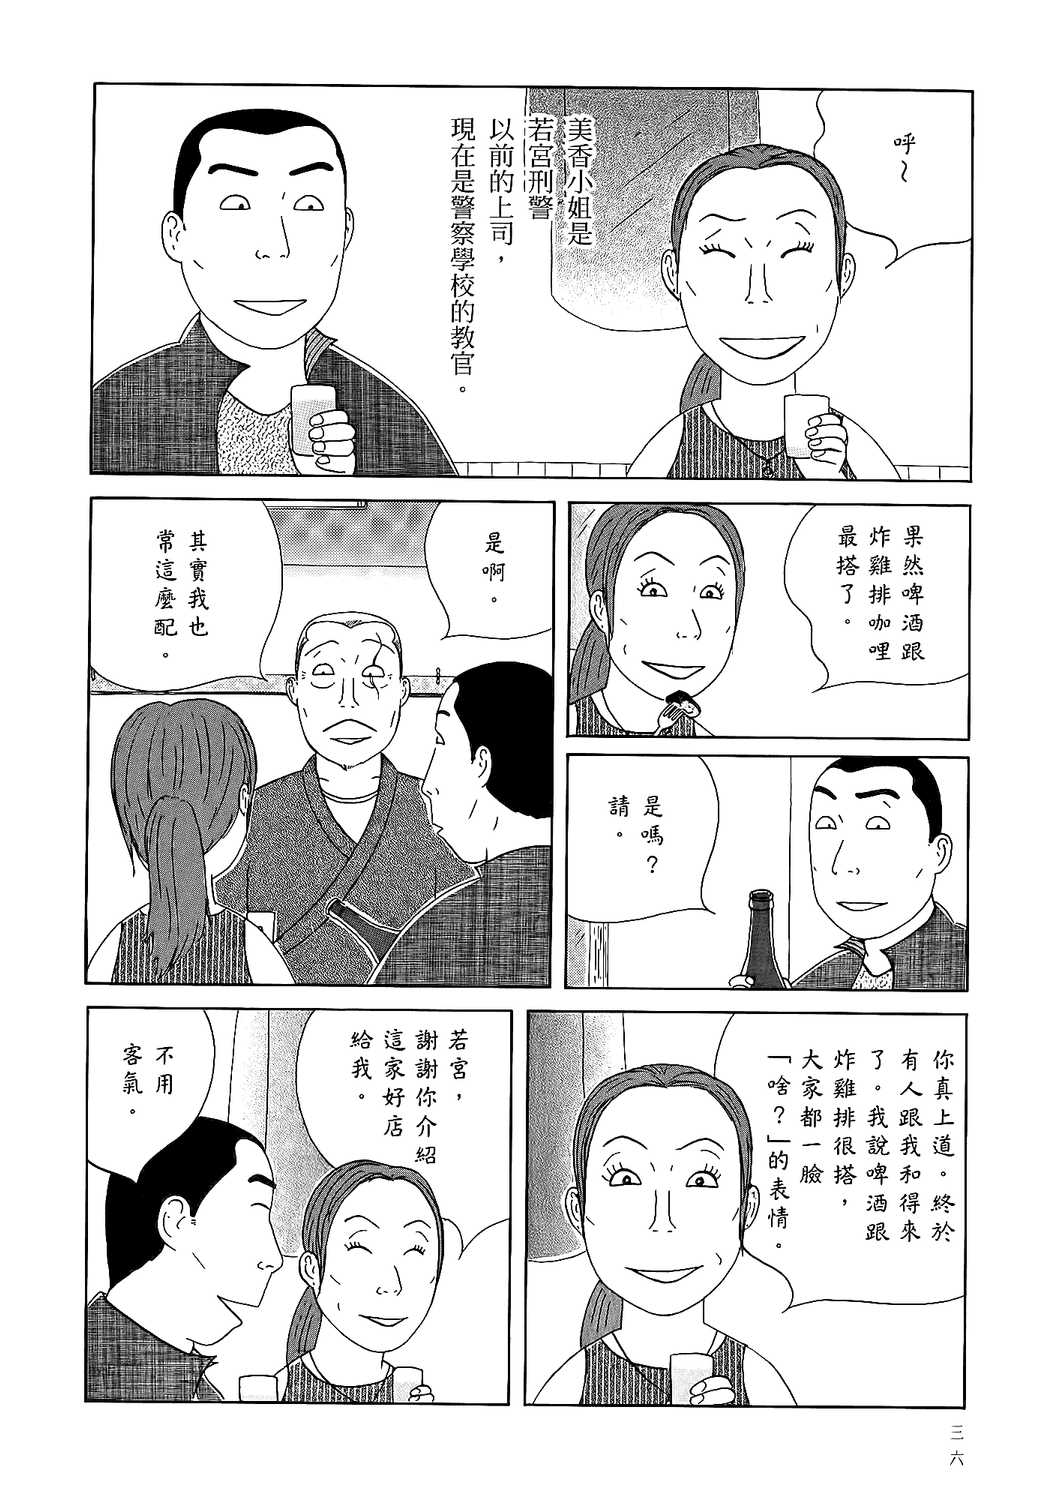 深夜食堂漫画单行本第18集 漫画db